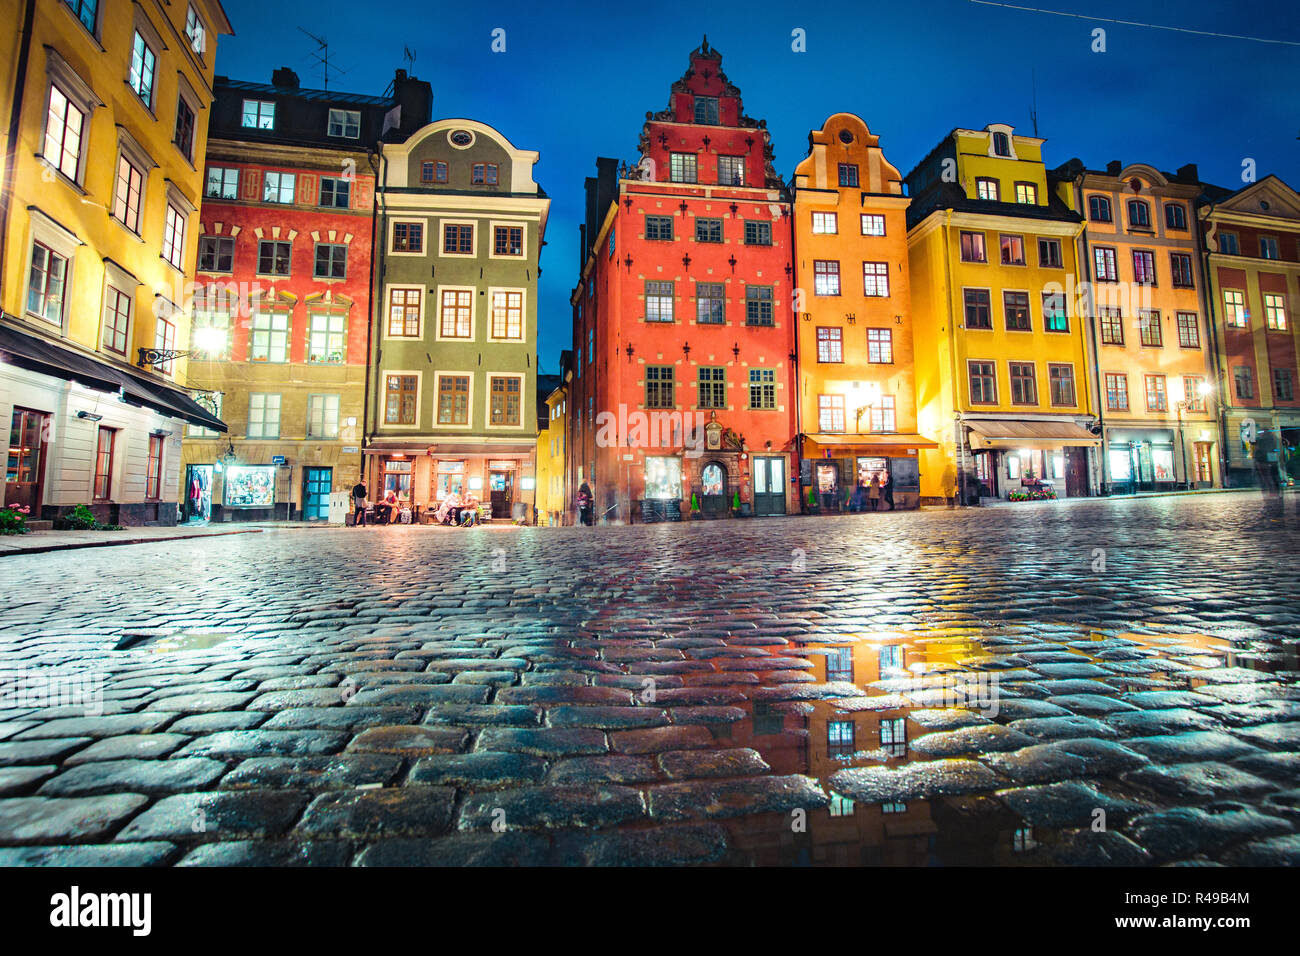 Visualizzazione classica delle case colorate al famoso Stortorget town square a Stoccolma storico di Gamla Stan (la Città Vecchia) di notte, centrale di Stoccolma, Svezia Foto Stock